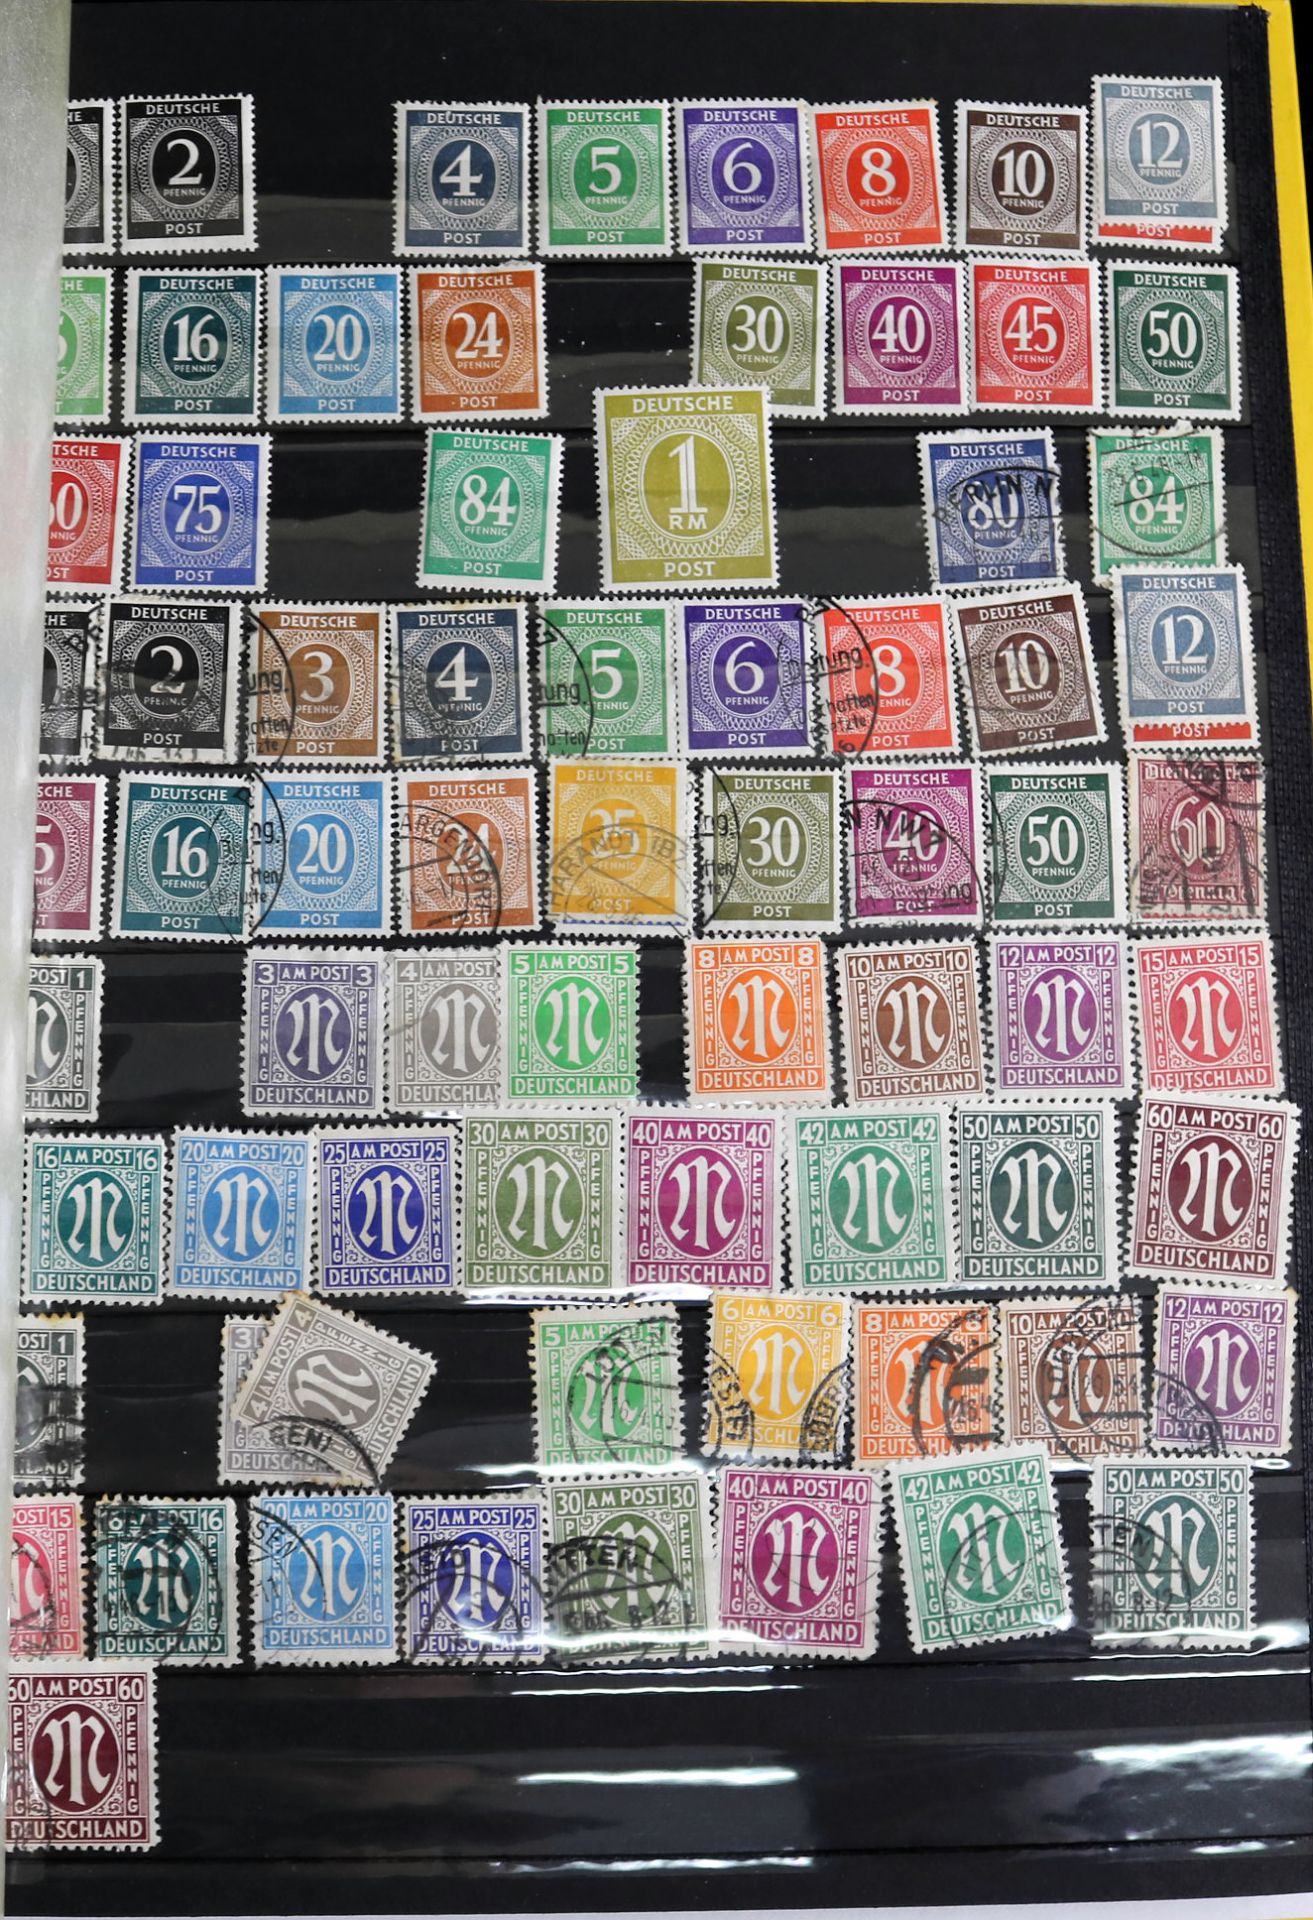 Konvolut Briefmarken, ca. 600 Stk., Briefmarken aus Deutschland, Europa und Amerika, 19./20. Jh. - Image 2 of 6